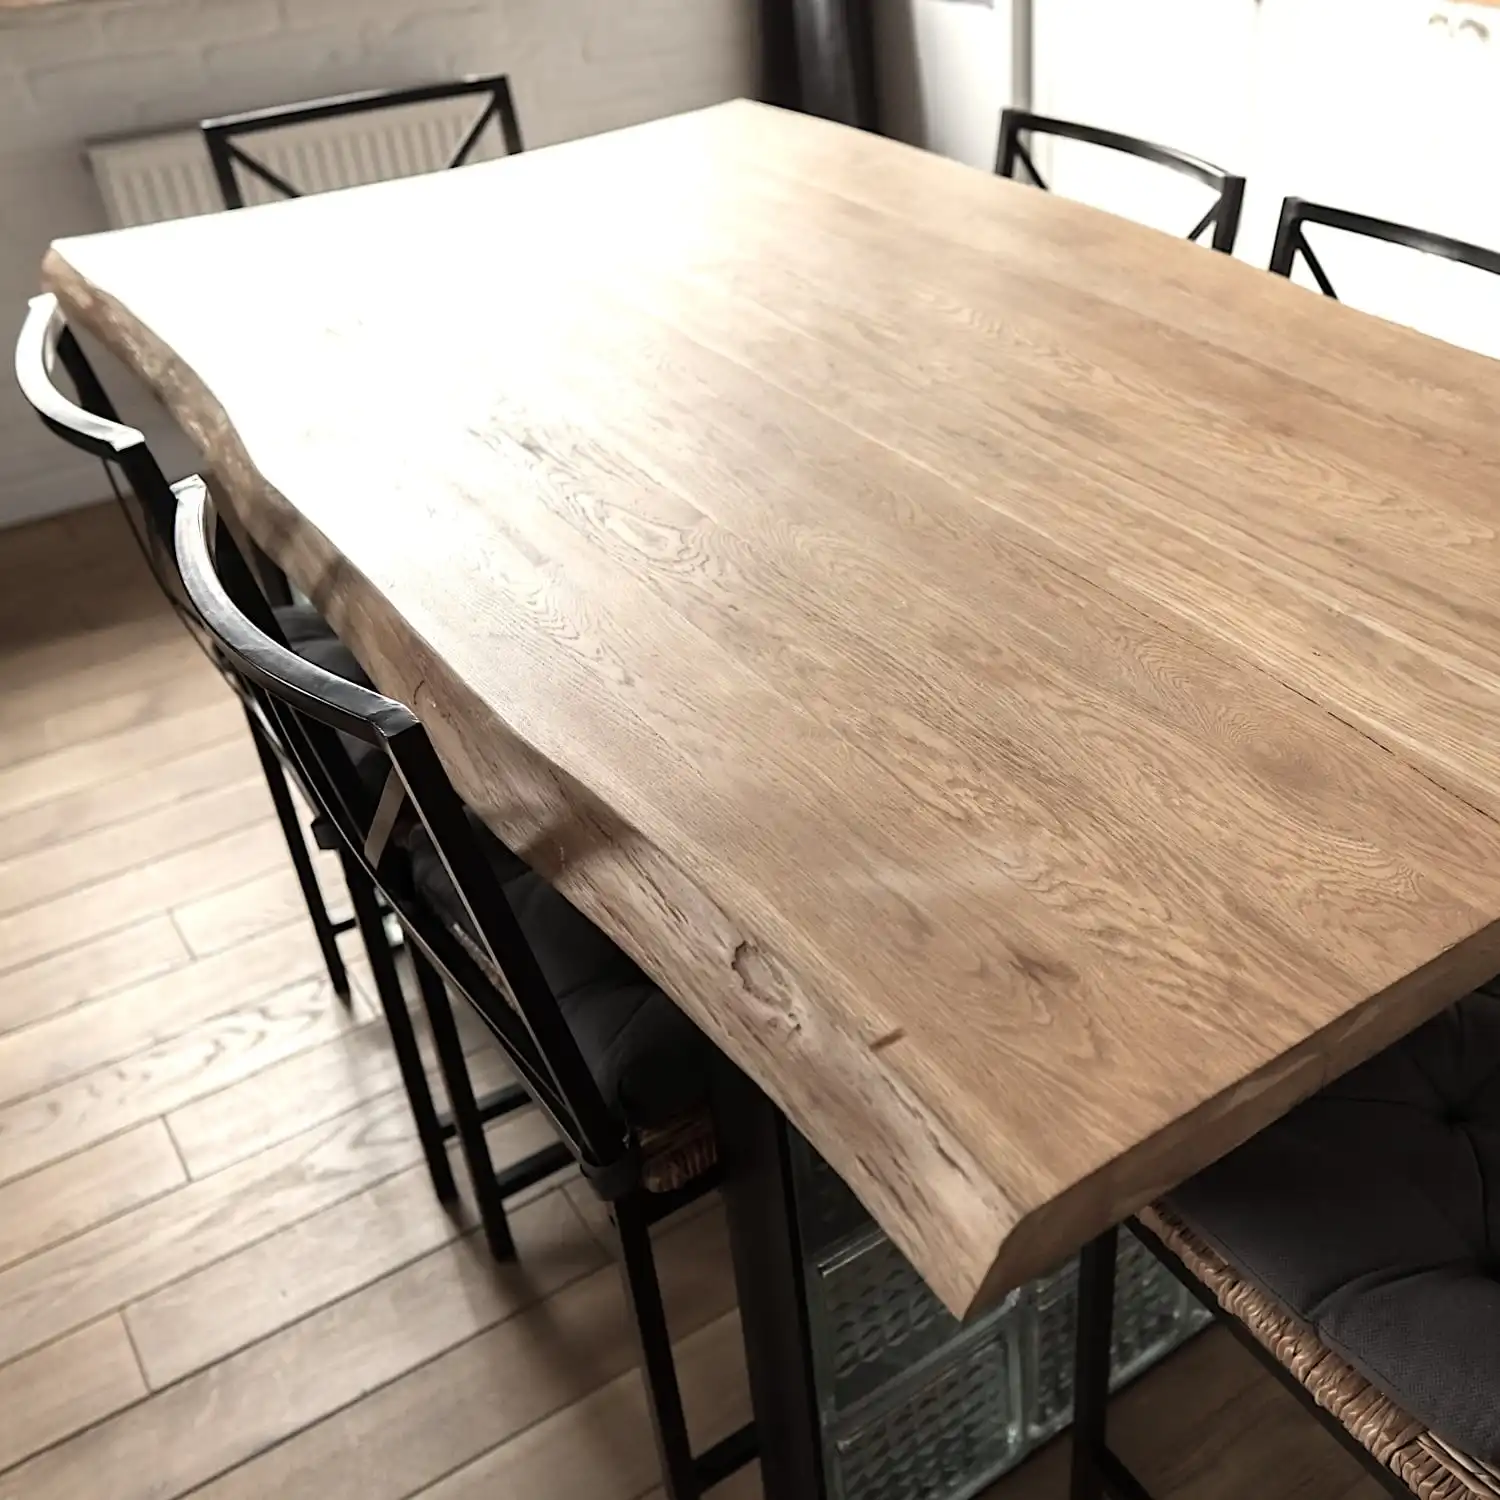  Une table à manger rustique fabriquée à partir d'une grande plaque de vieux bois. 